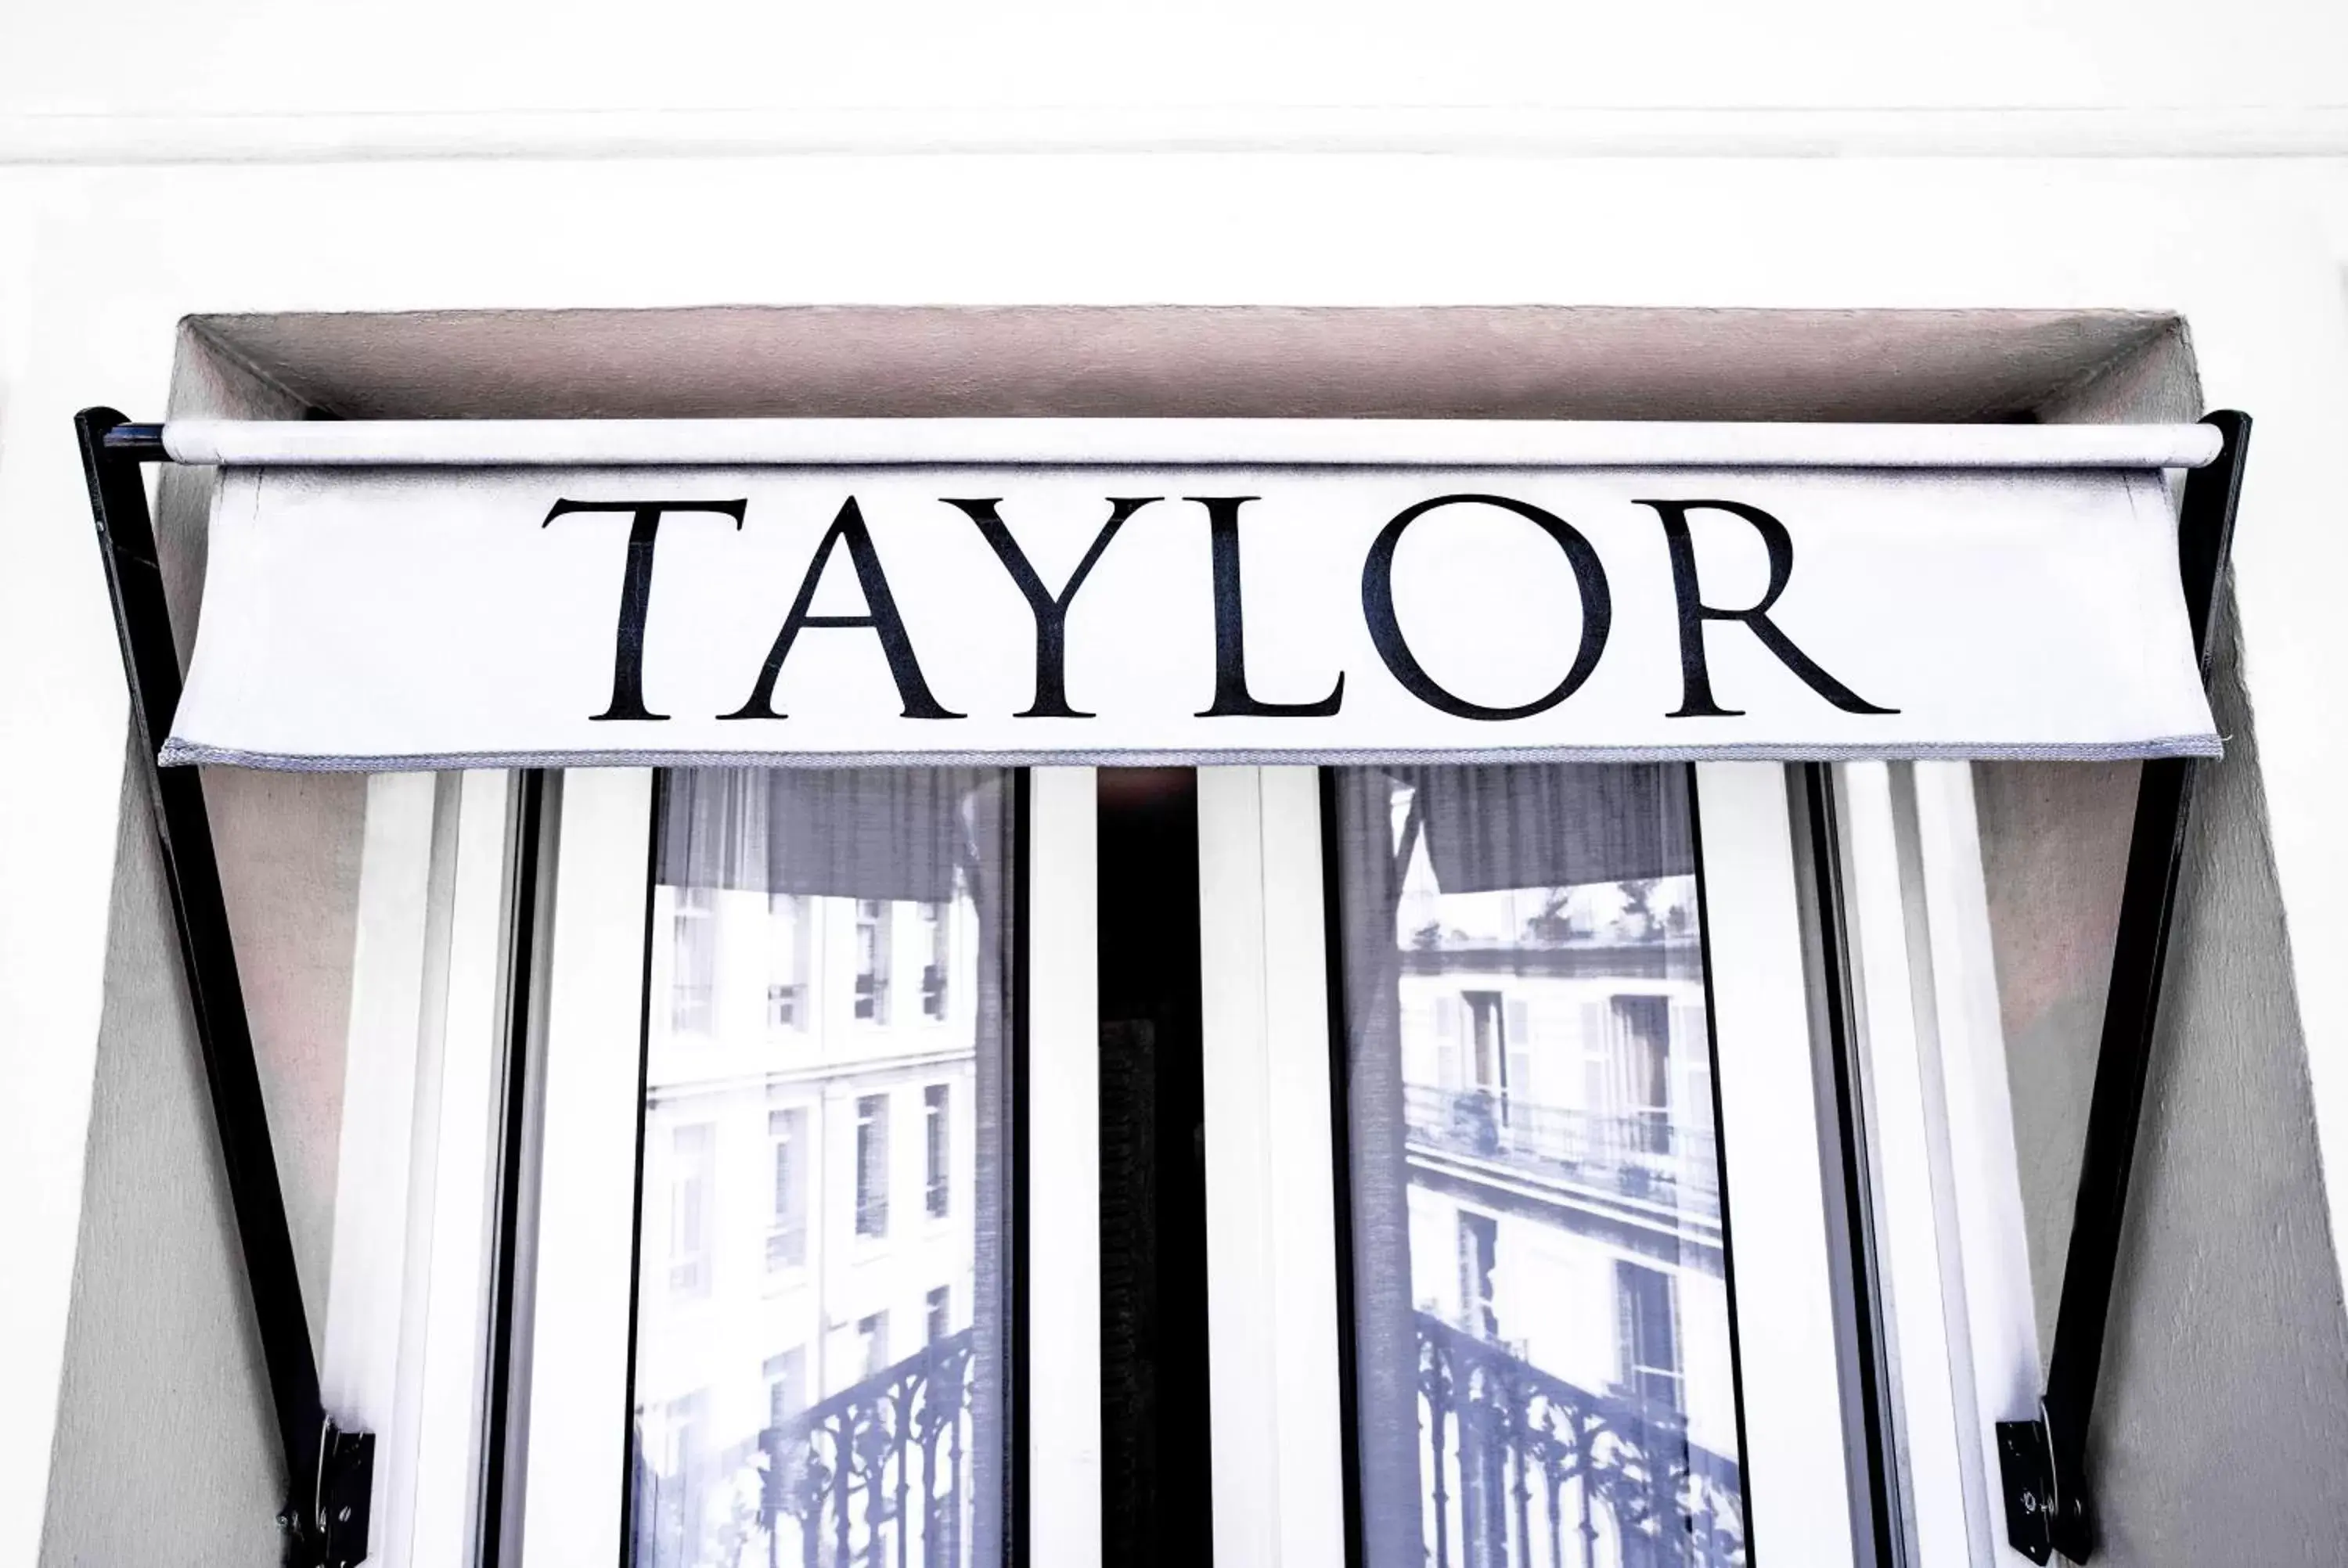 Facade/entrance in Hotel Taylor